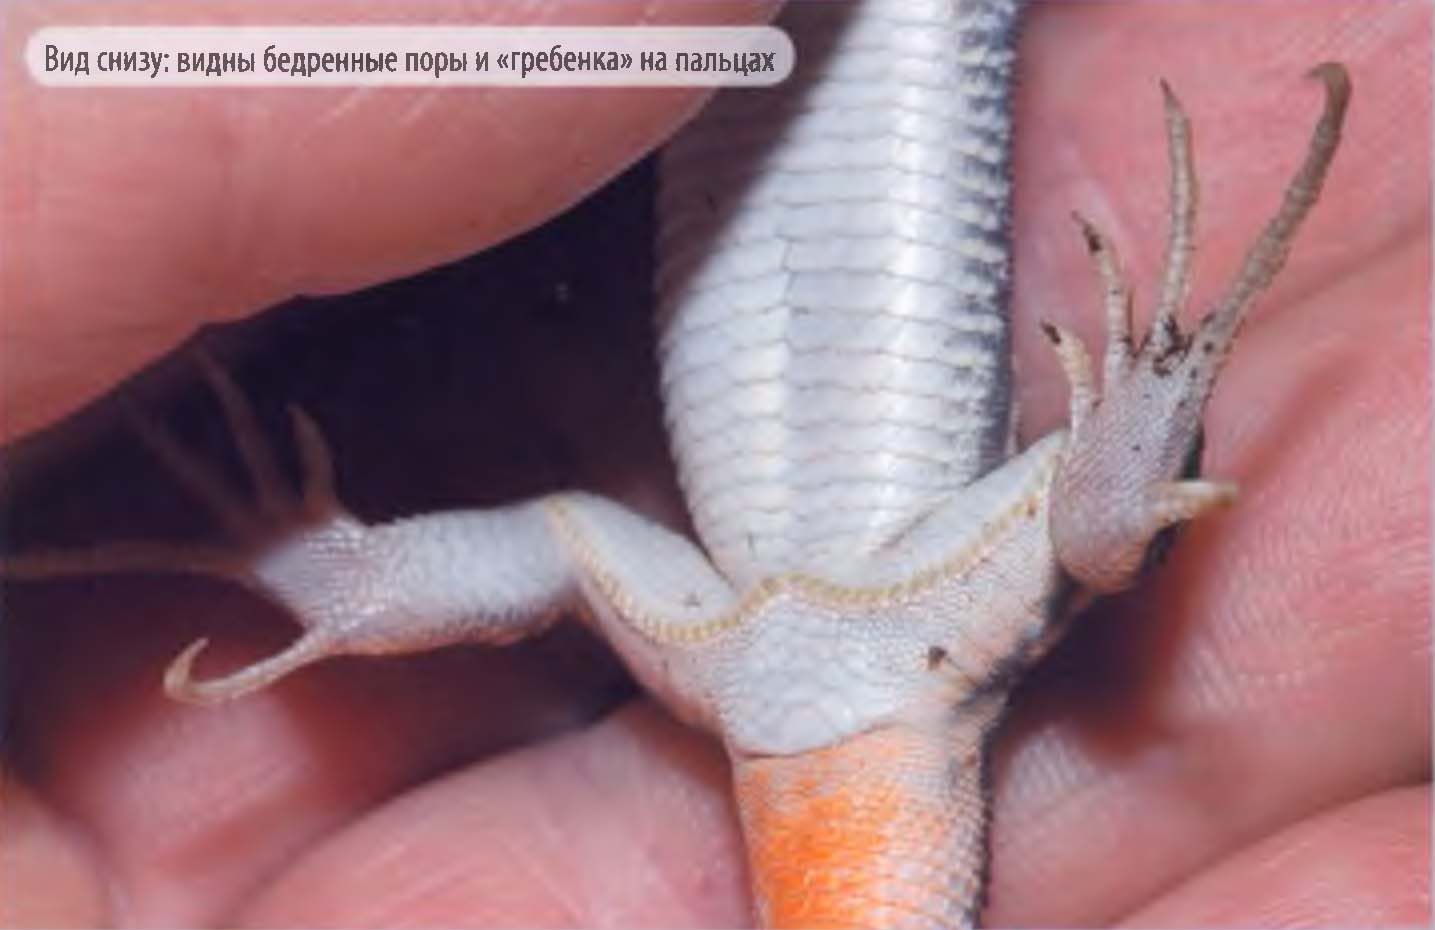 Вид ящерицы Шрайбера снизу: видны бедренные поры и «гребенка» на пальцах.